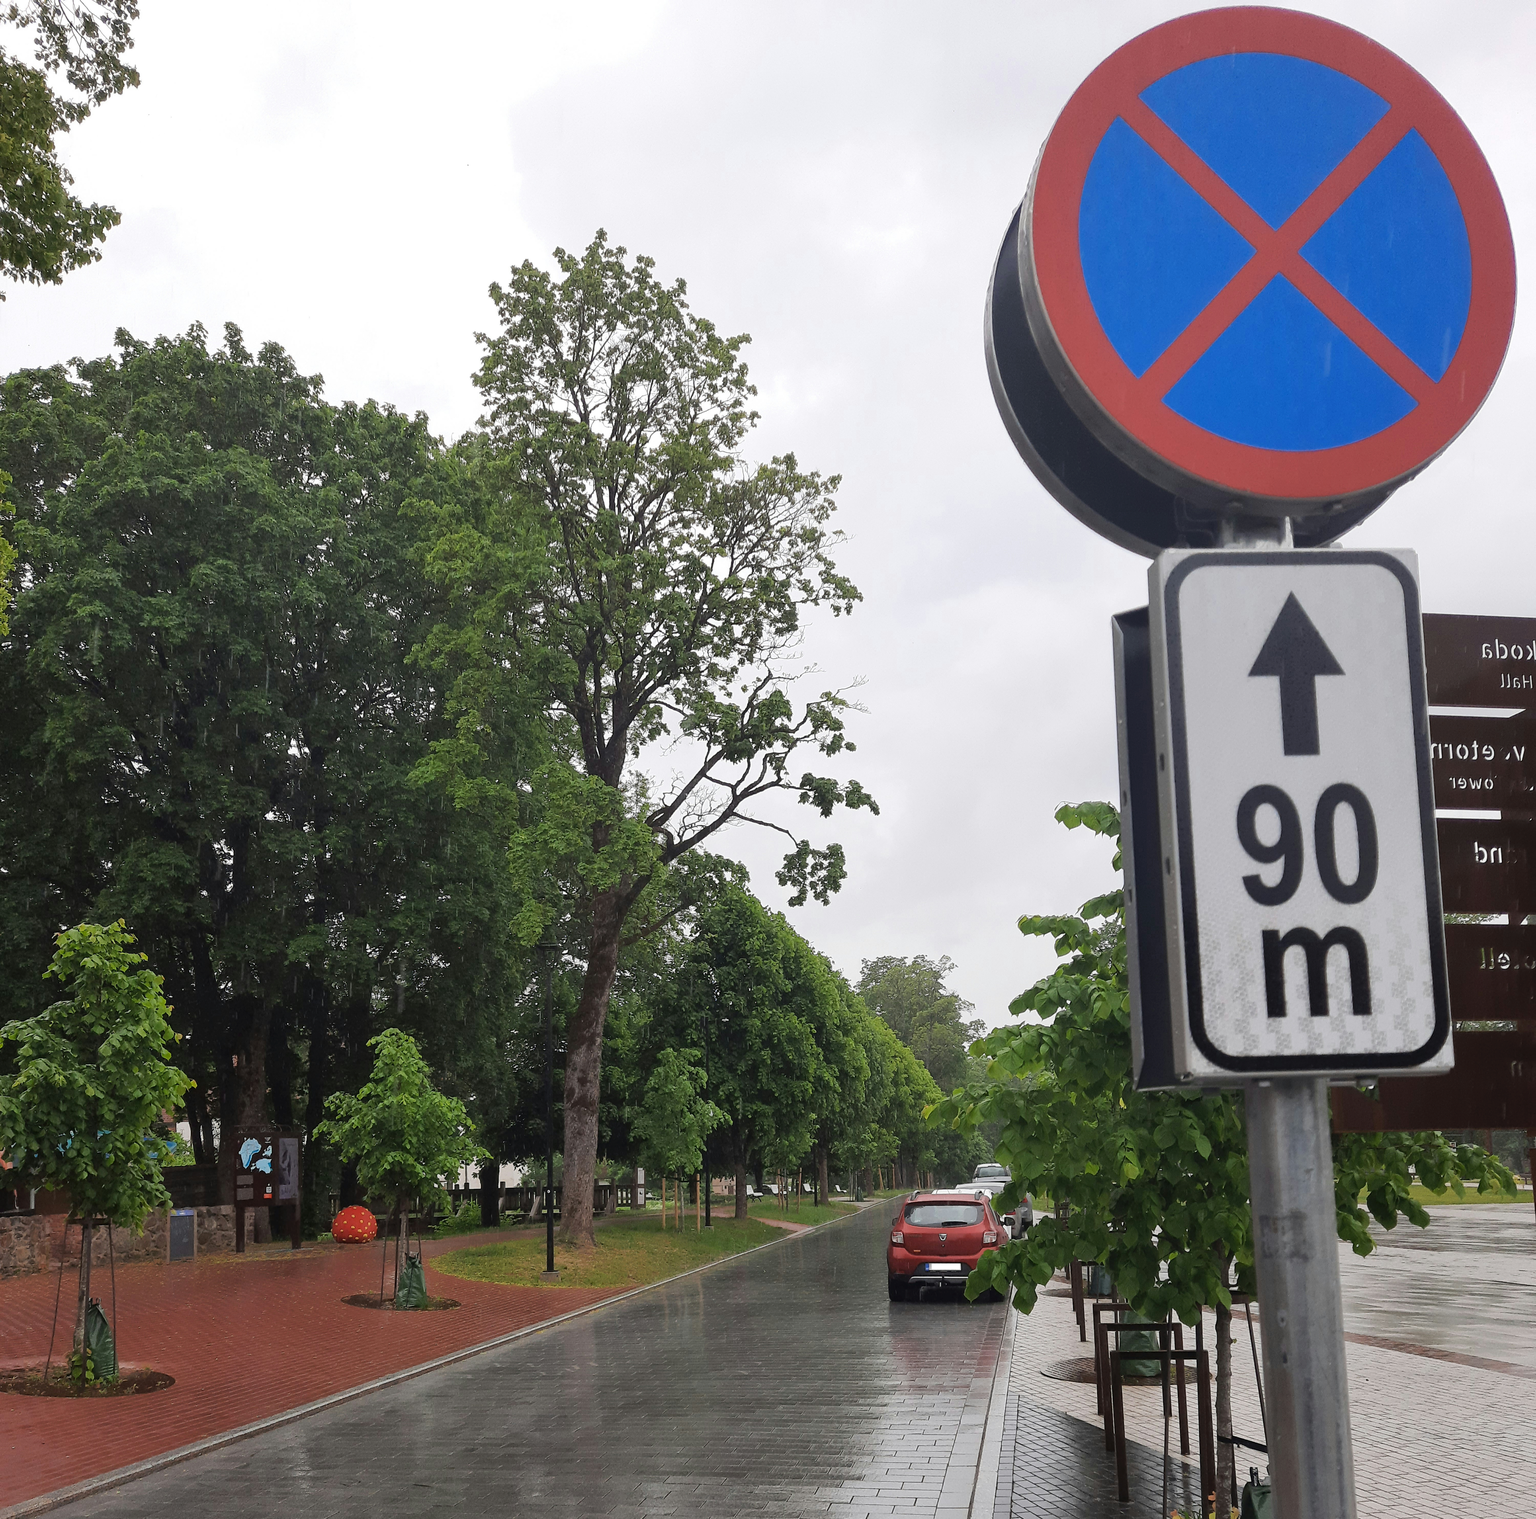 Viljandis Vabaduse platsi ääres kulgeval Tasuja puiesteel on küll parkimine keelatud, kuid trahvihoiatustest hoolimata leiab seal tihti nii parkijaid kui peatujaid. Foto on tehtud teisipäeval kella 13 ajal.